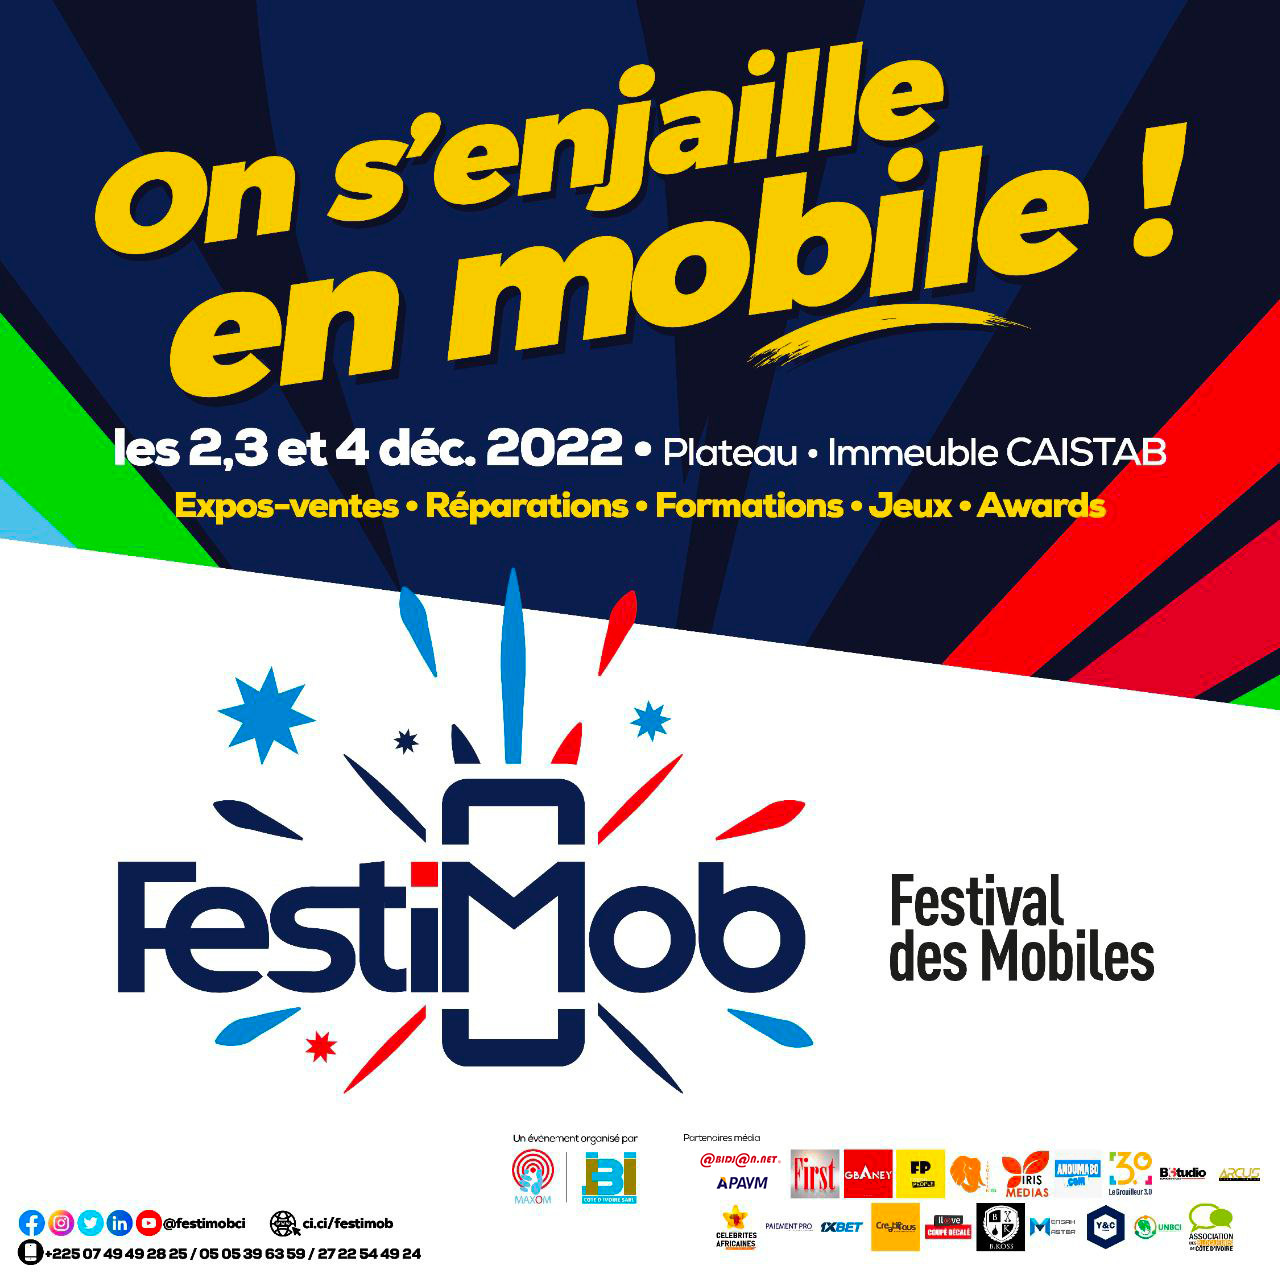 FestiMob (Festival des Mobiles) 2022 : 1er Festival destiné aux technologies mobiles de Côte d’Ivoire